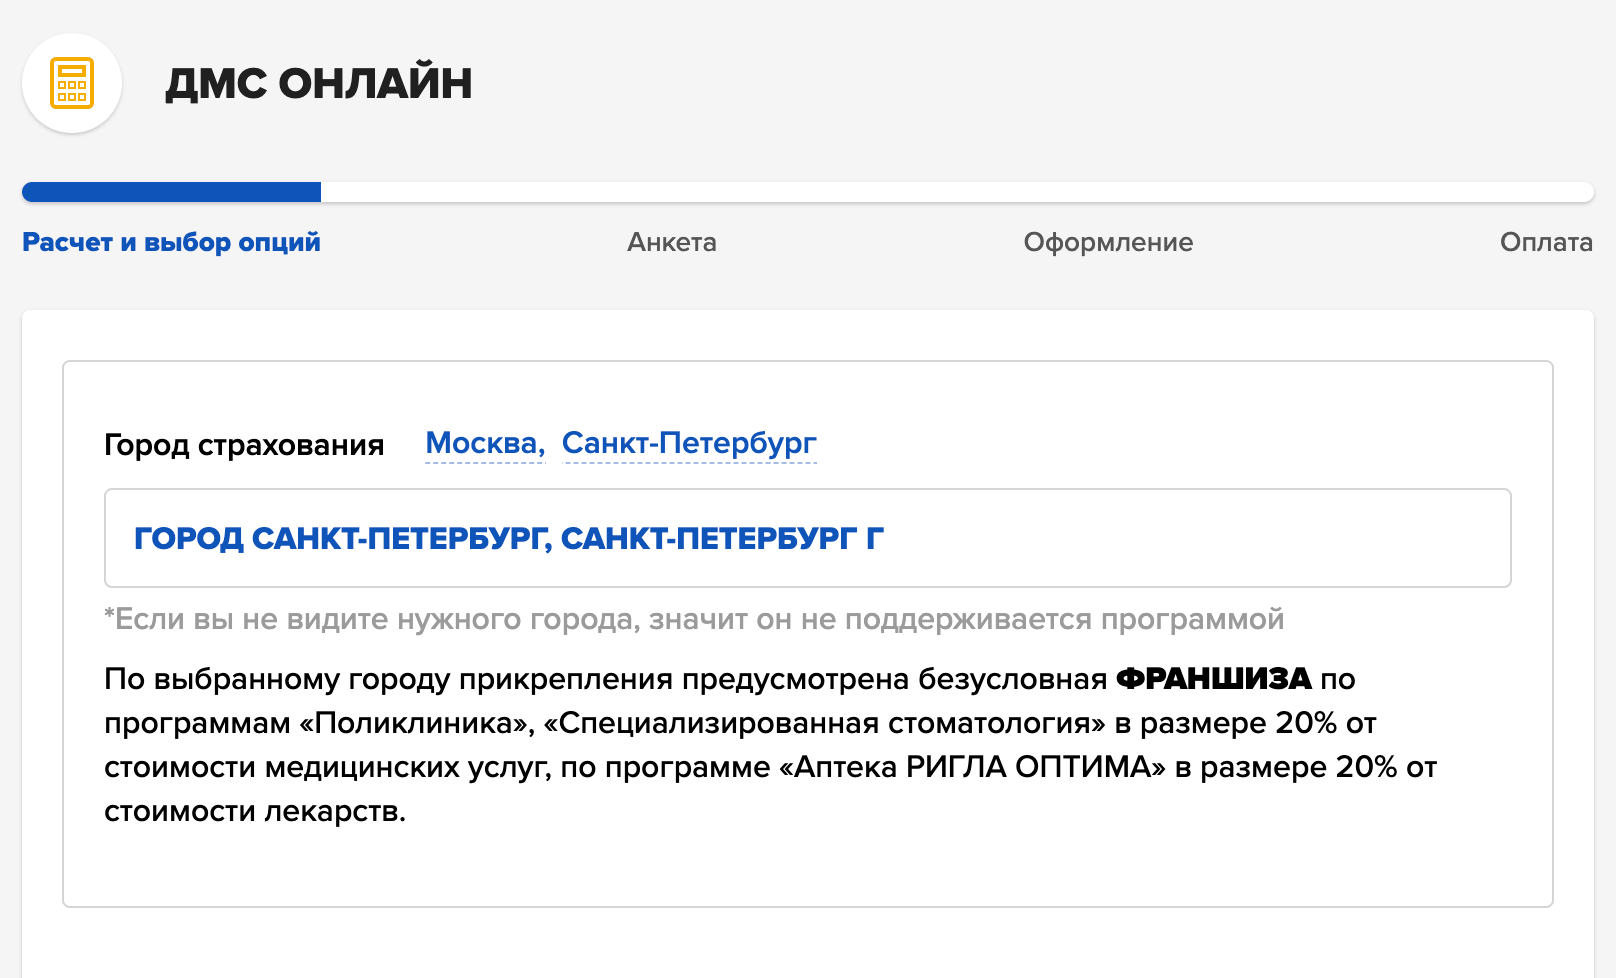 При выборе города на сайте компании сразу появляется предупреждение о франшизе. Источник: ingos.ru